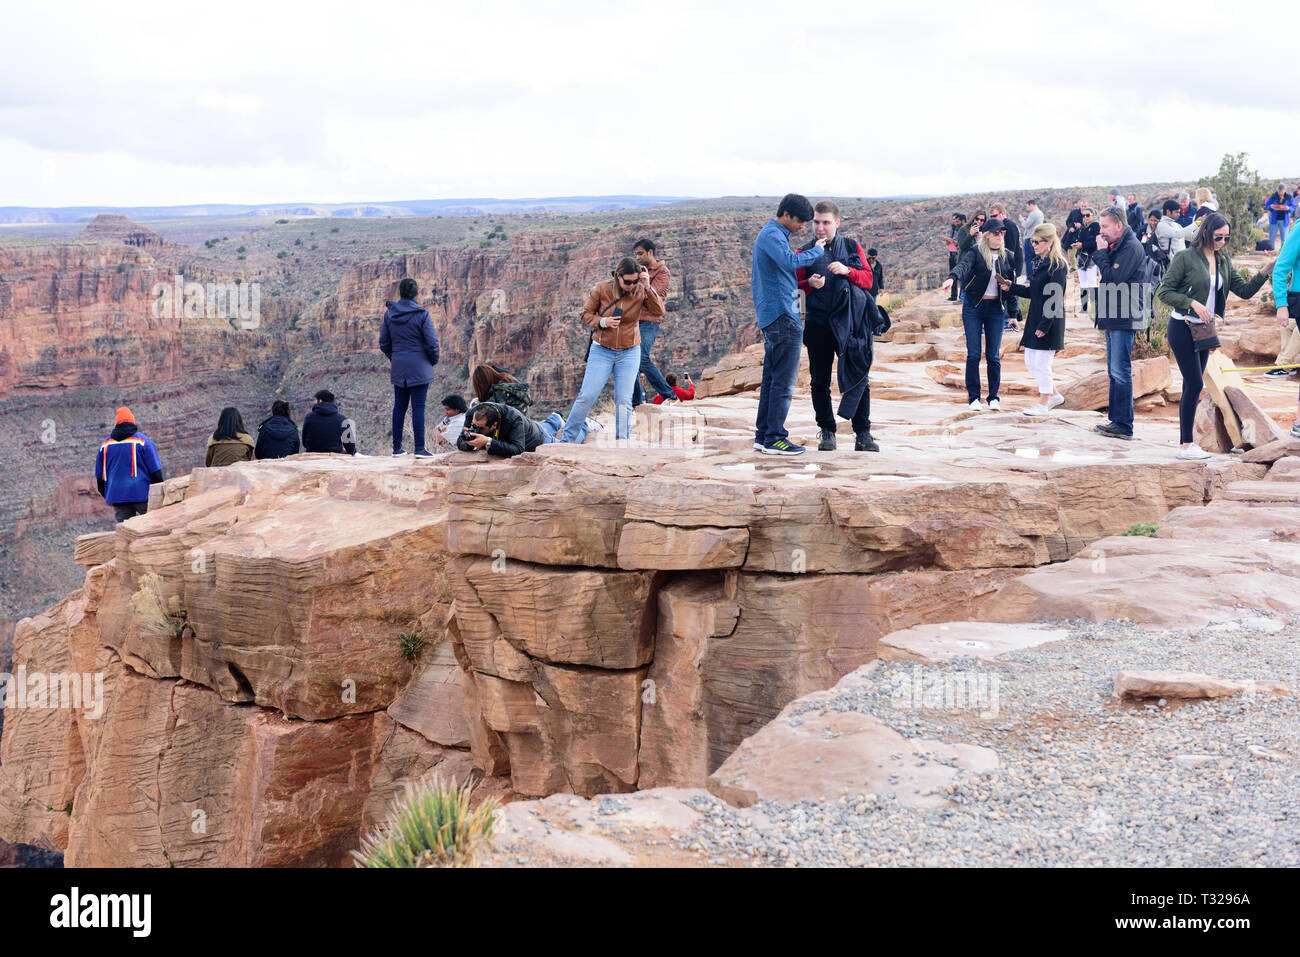 GRAND CANYON - 19 febbraio: turisti scattare foto di Eagle Point a West Rim del Grand Canyon il 19 febbraio 2017 nel Grand Canyon, AZ Foto Stock